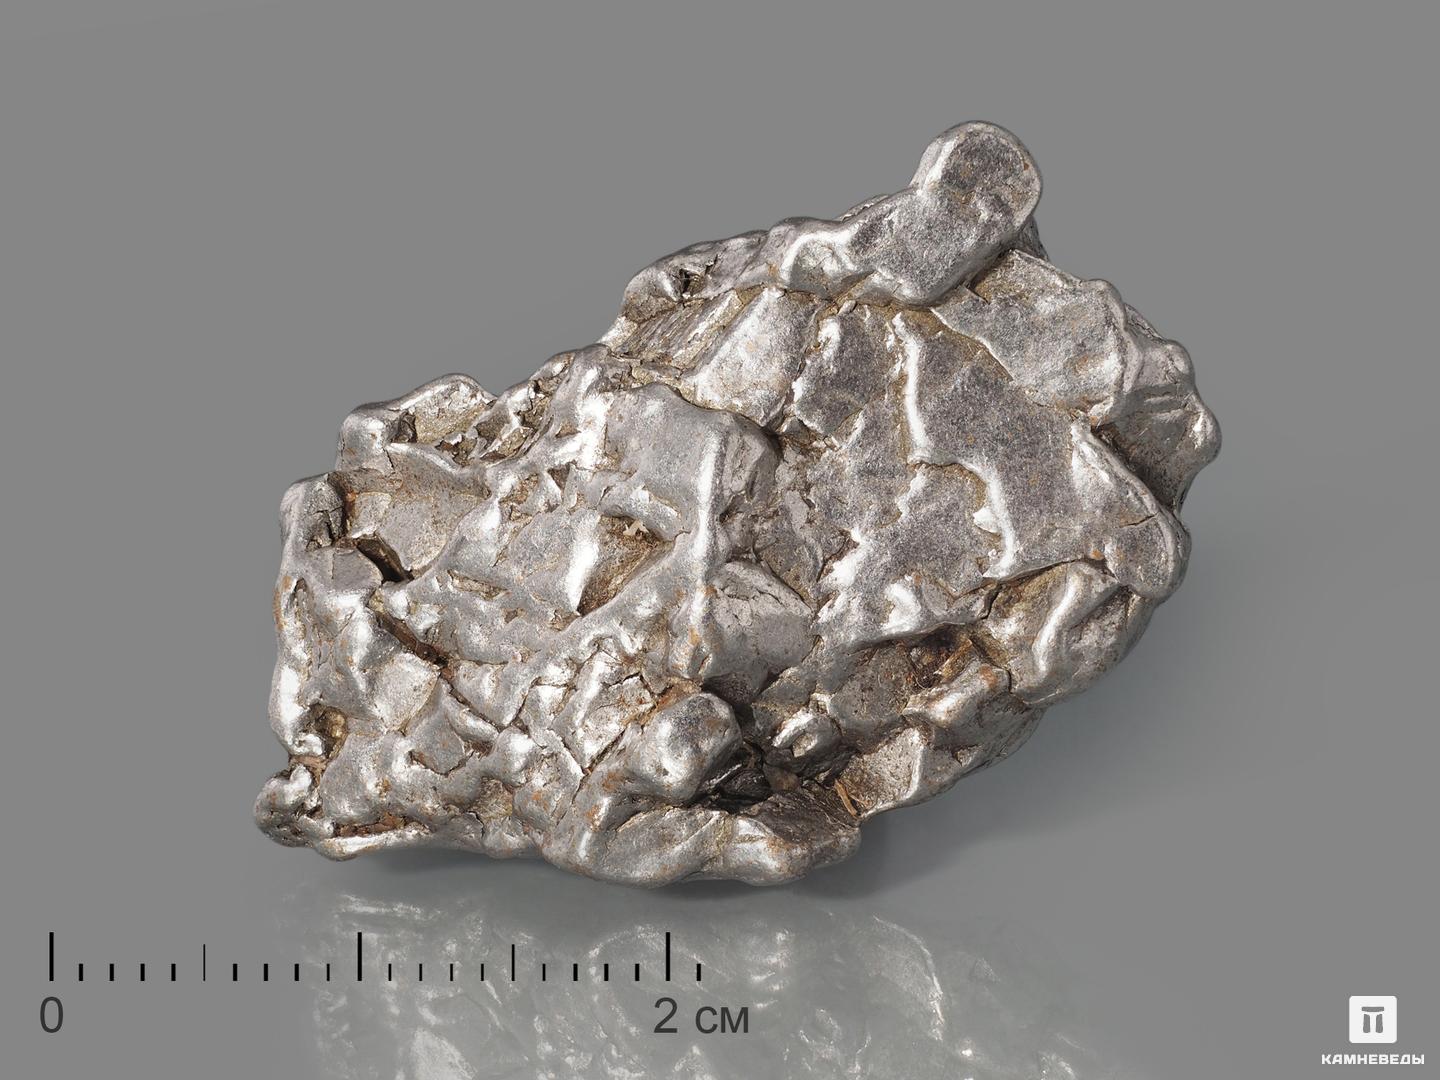 Метеорит Кампо-дель-Сьело, осколок 3-4 см (26-28 г) метеорит кампо дель сьело осколок 2 5 3 5 см 21 23 г